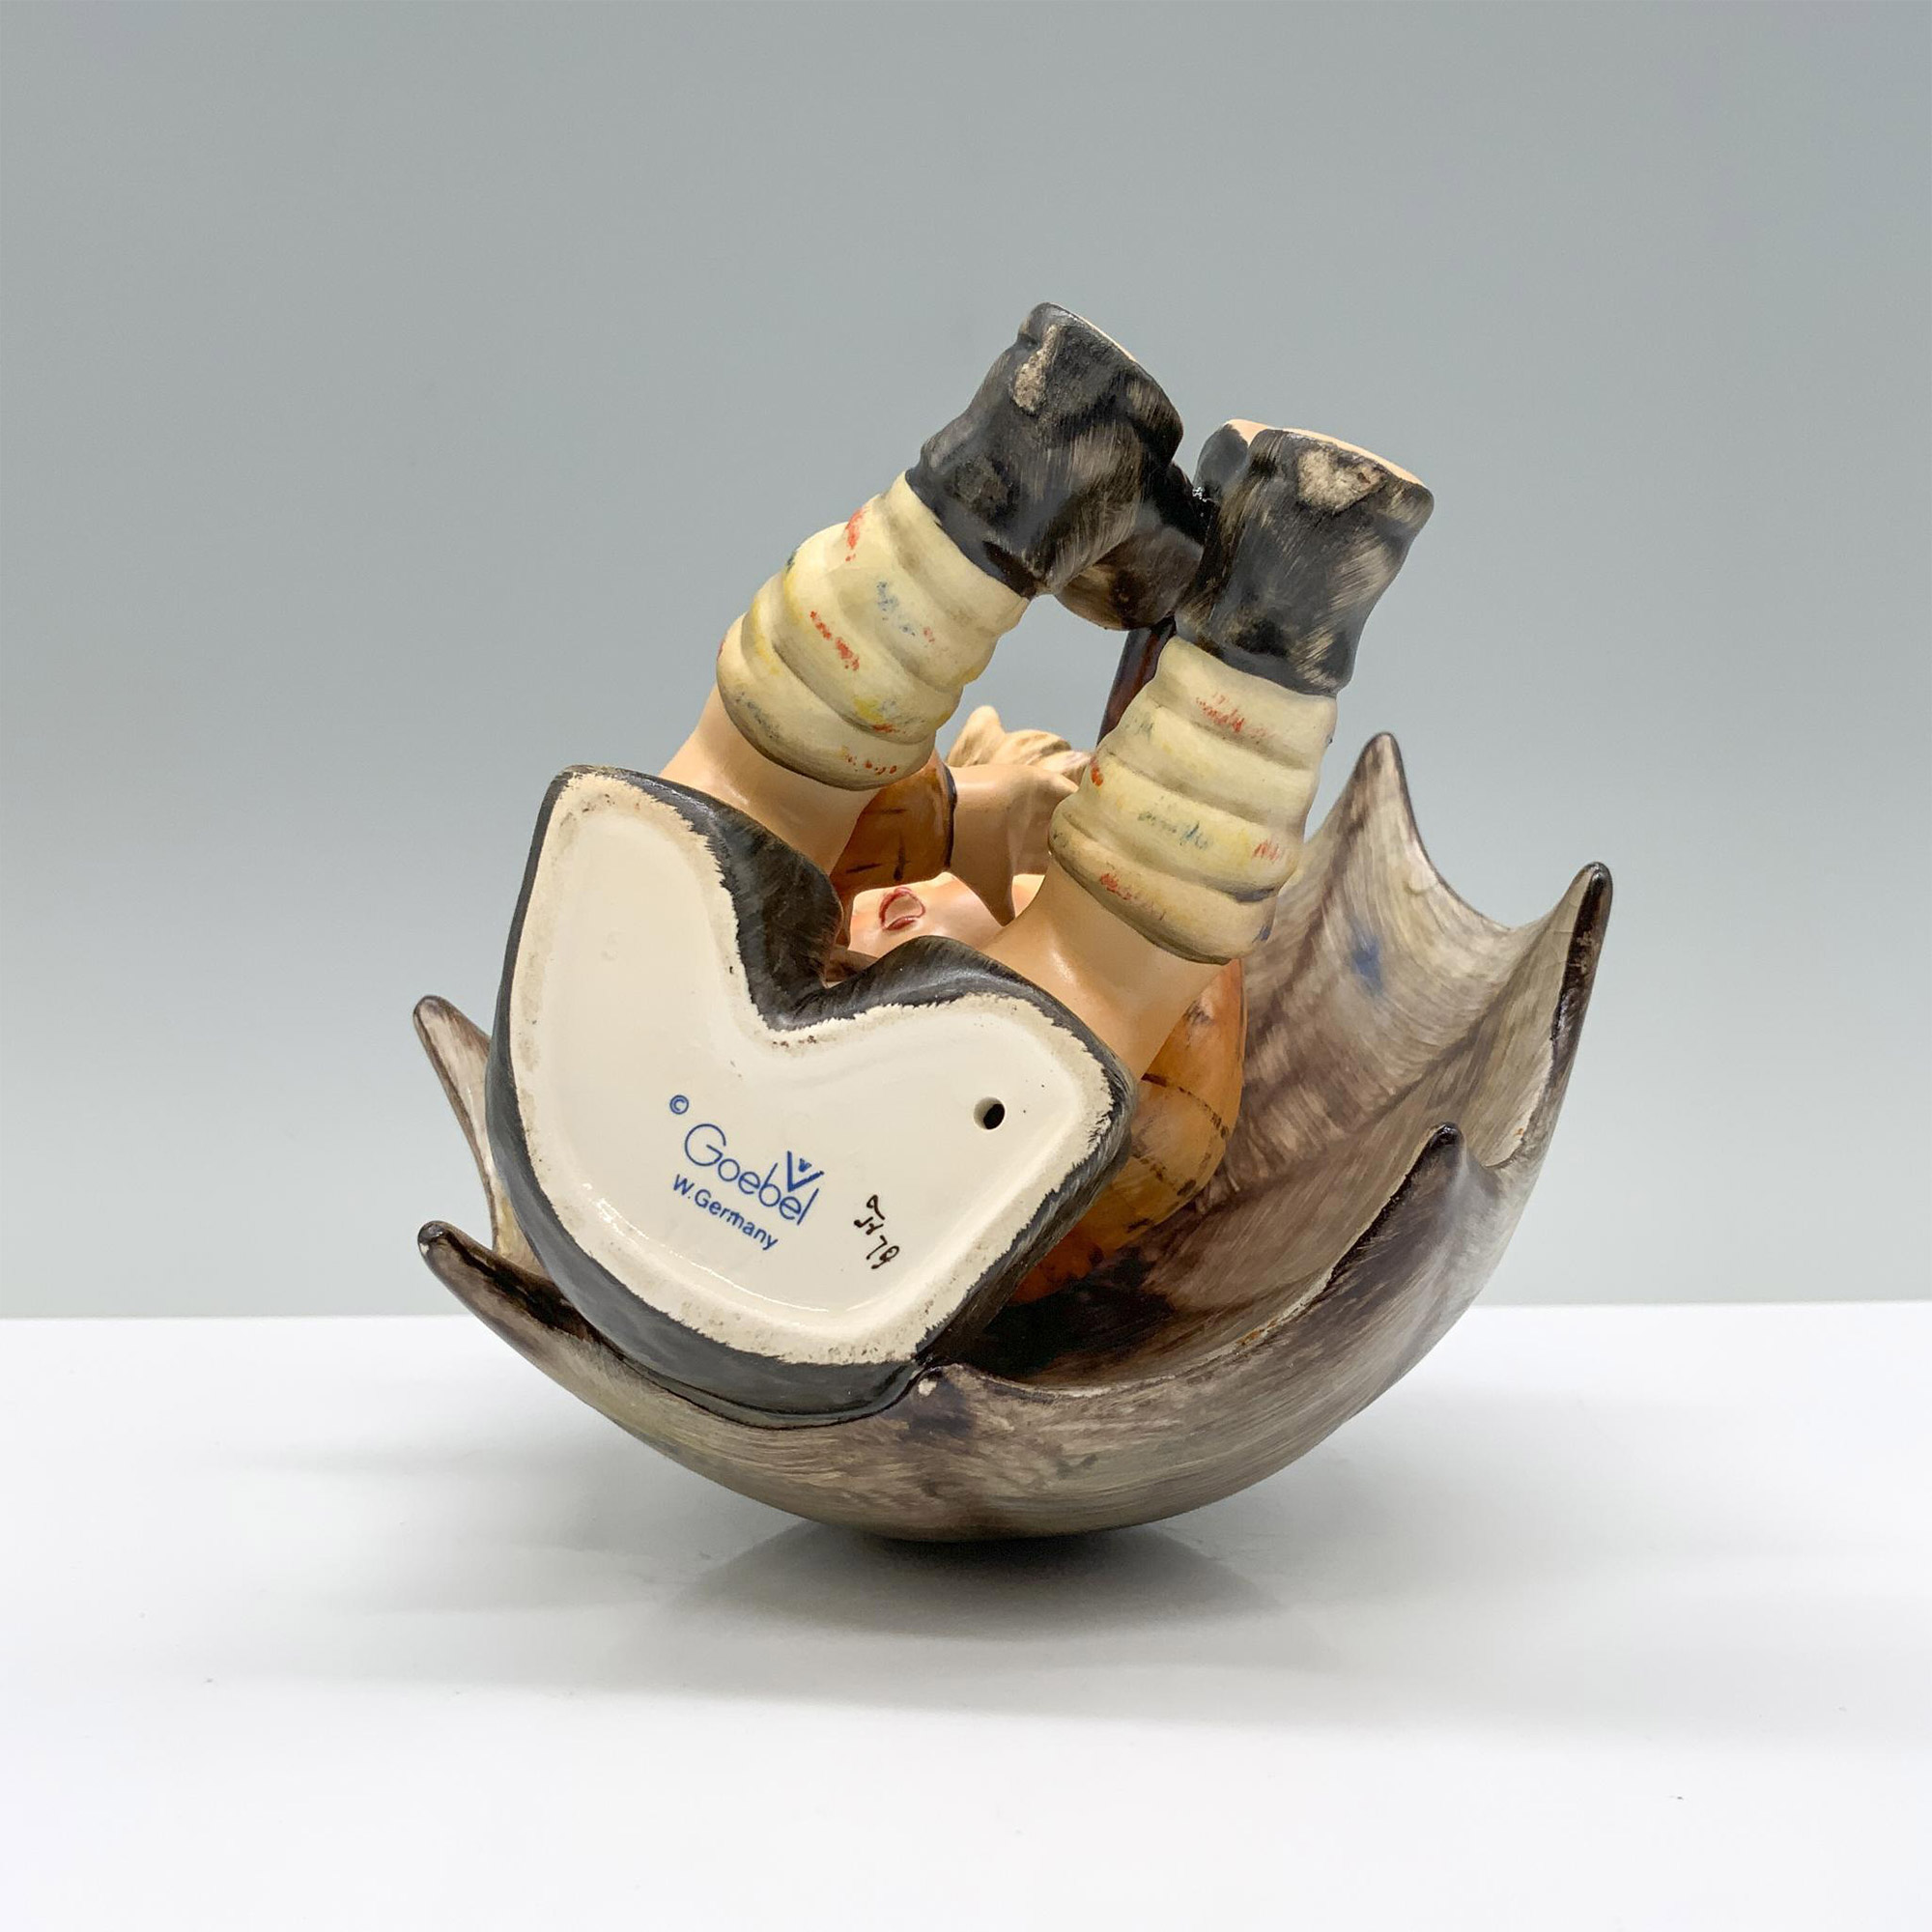 Goebel Hummel Figurine, Umbrella Boy - Image 3 of 3